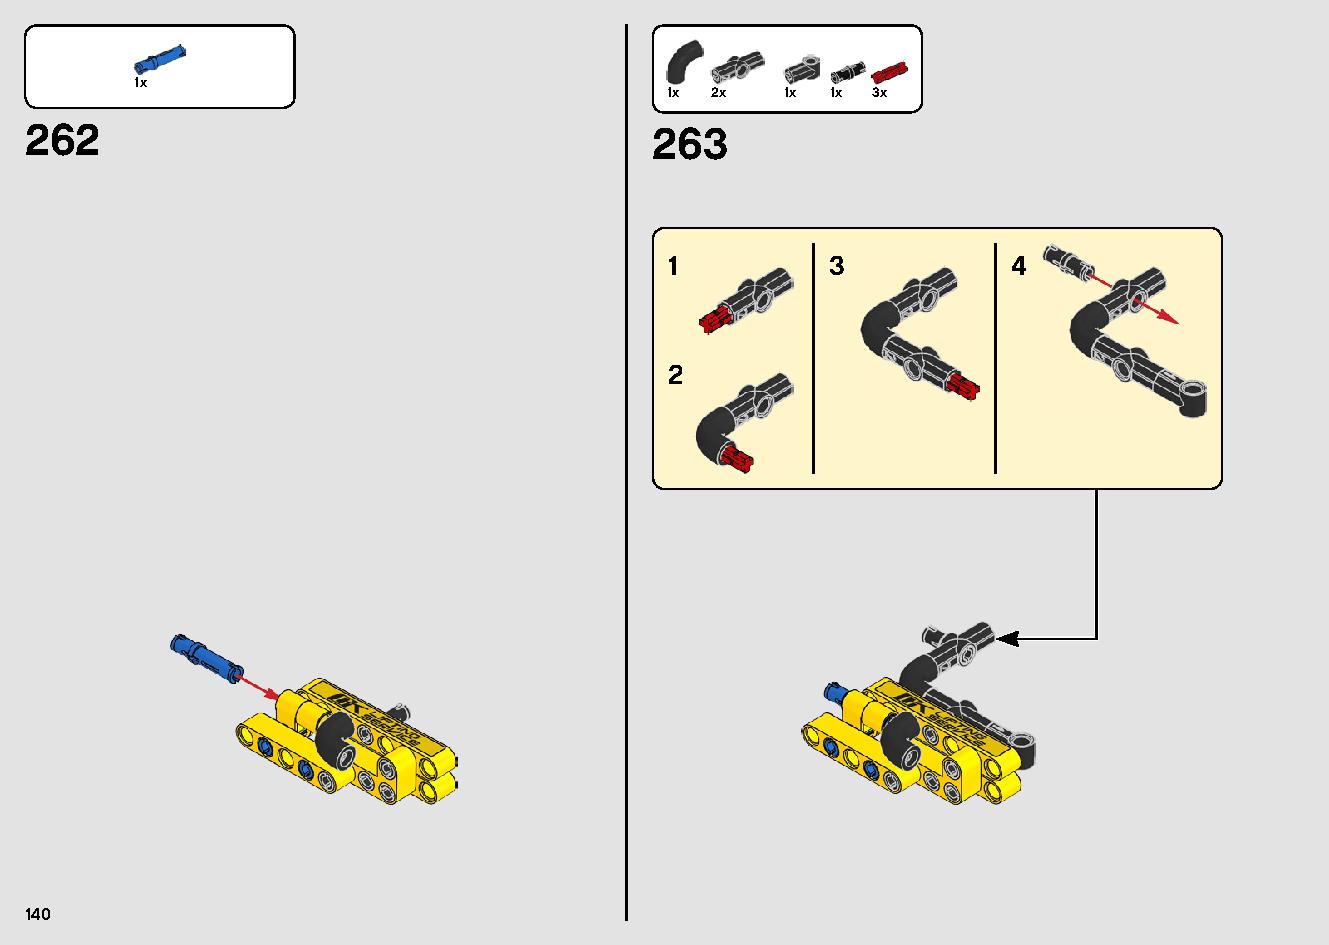 移動式クレーン車 42108 レゴの商品情報 レゴの説明書・組立方法 140 page